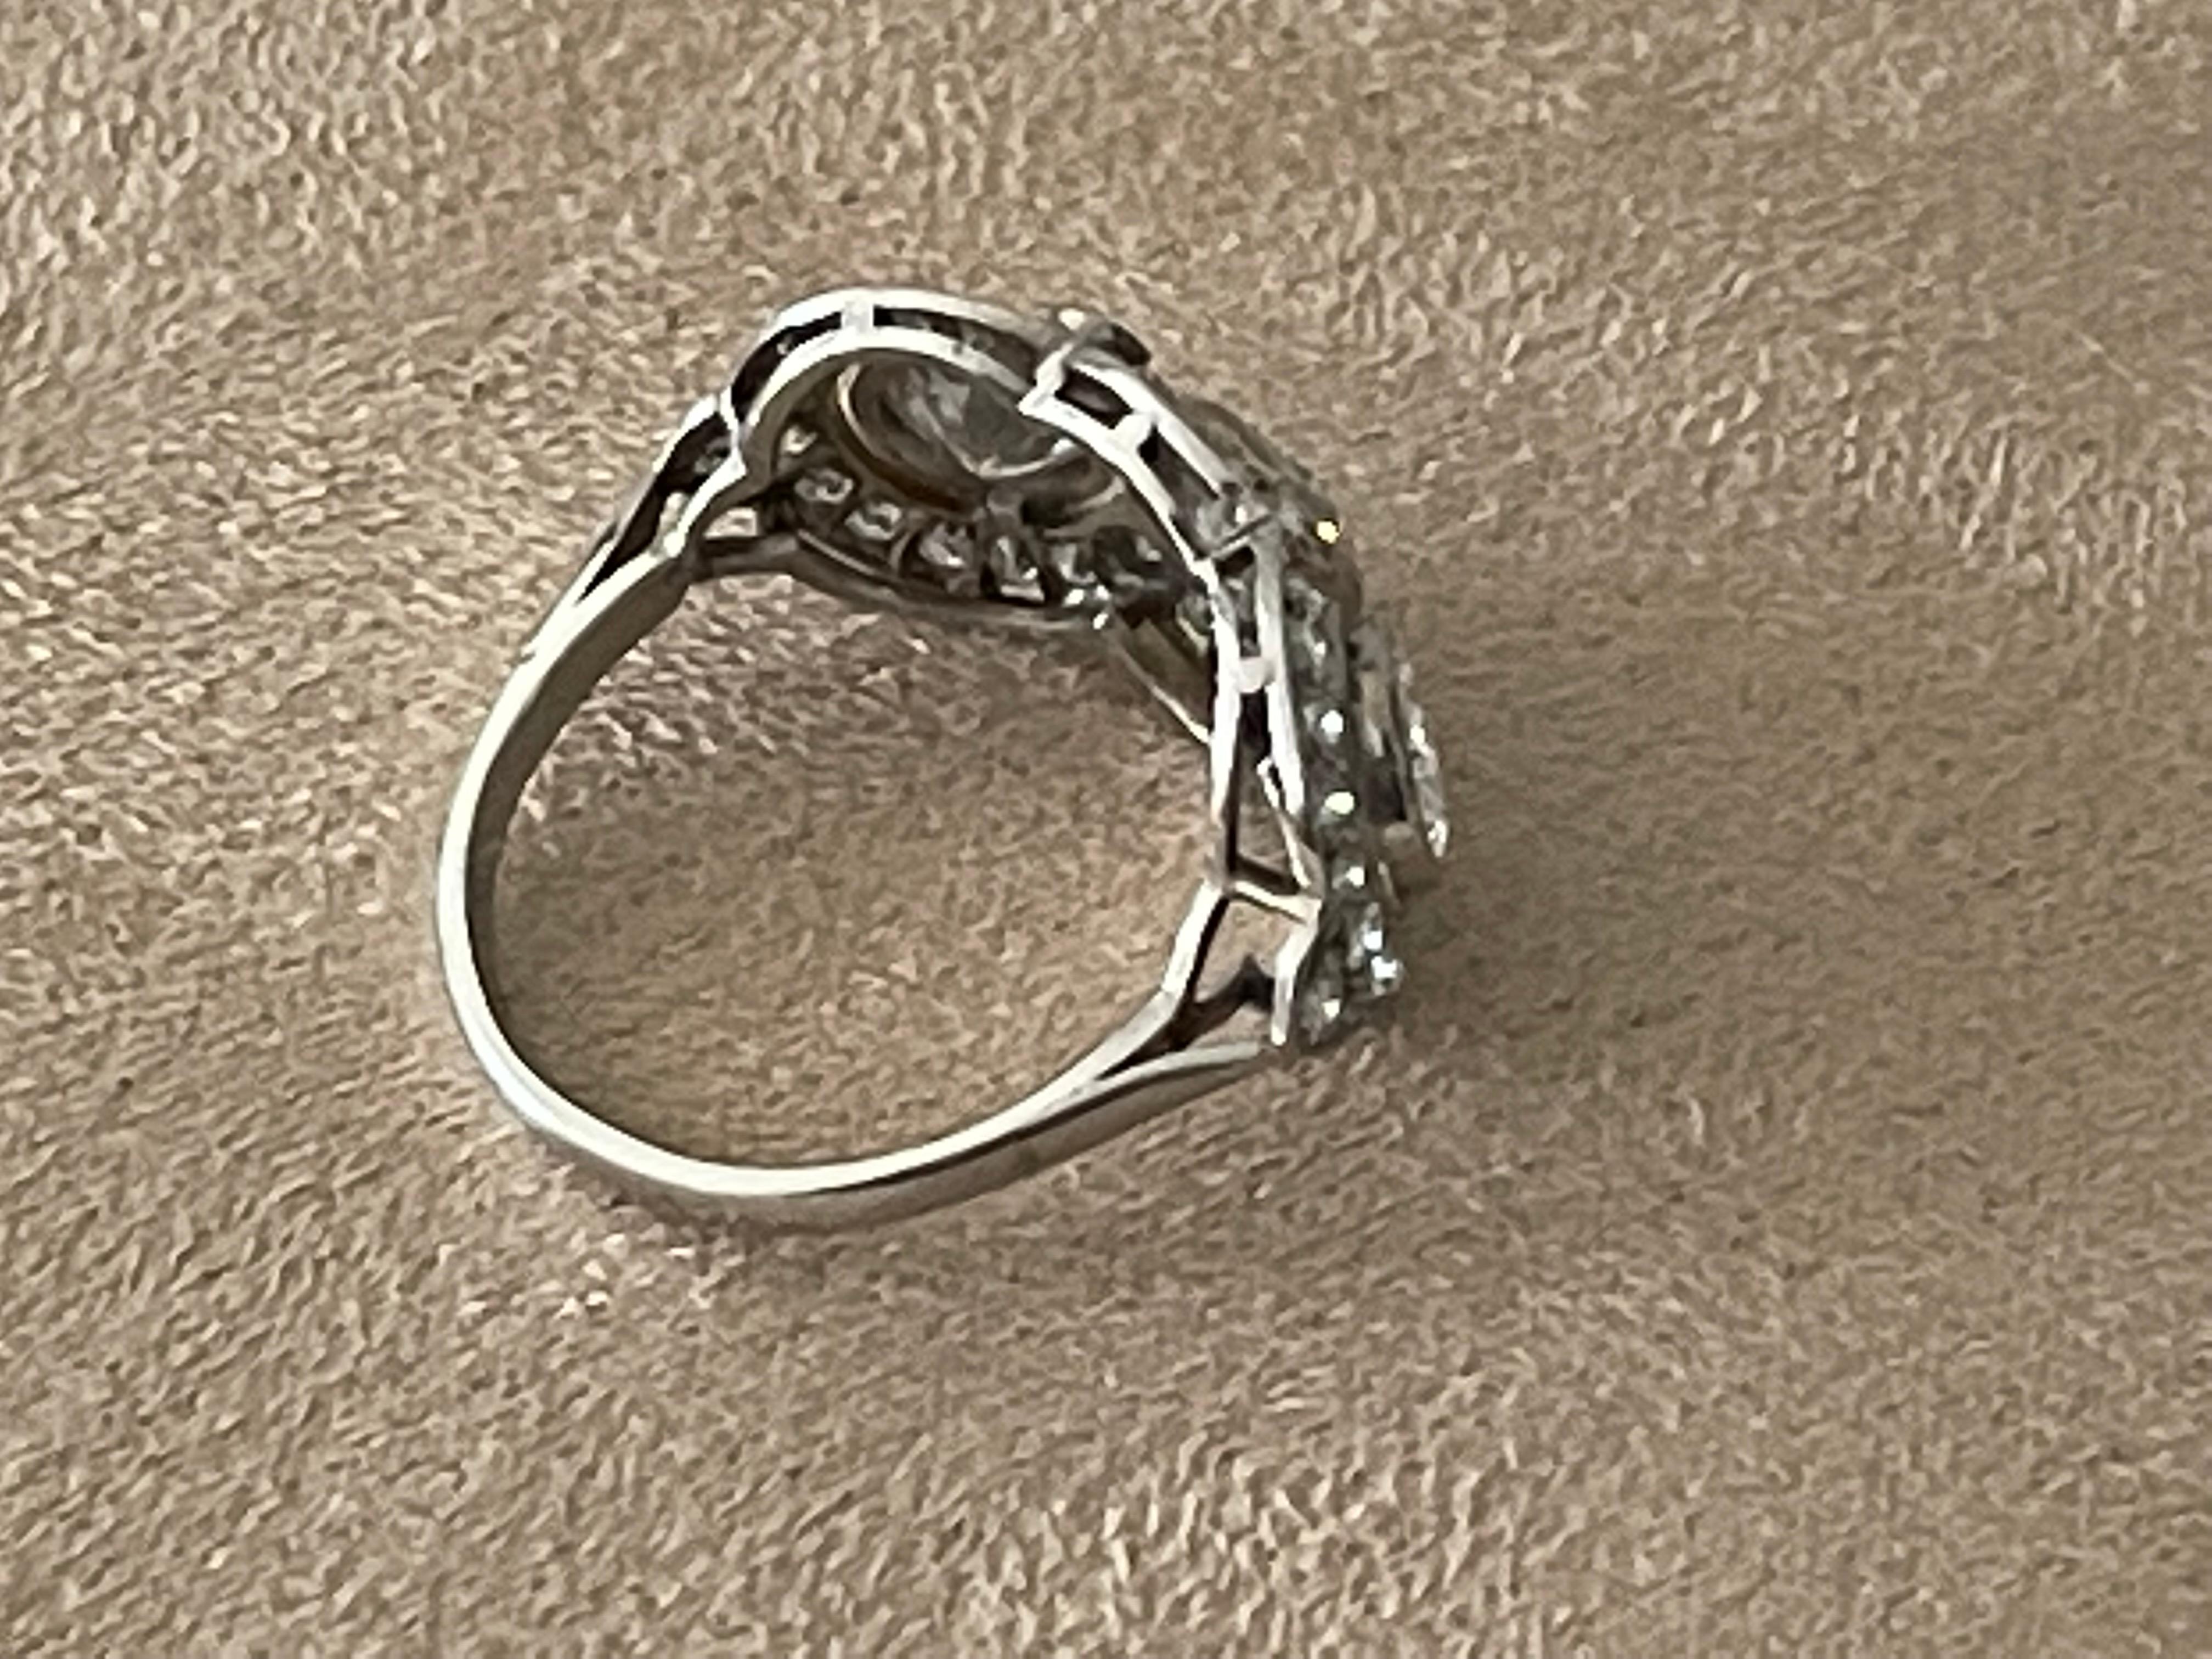 Dieser antike Ring wurde während der edwardianischen Design-Periode (1900-1920) kunstvoll von Hand gefertigt. Die Fassung ist aus Platin und enthält 3 größere Diamanten im Brillantschliff mit einem Gewicht von etwa 1,50 ct. Die Diamanten in der